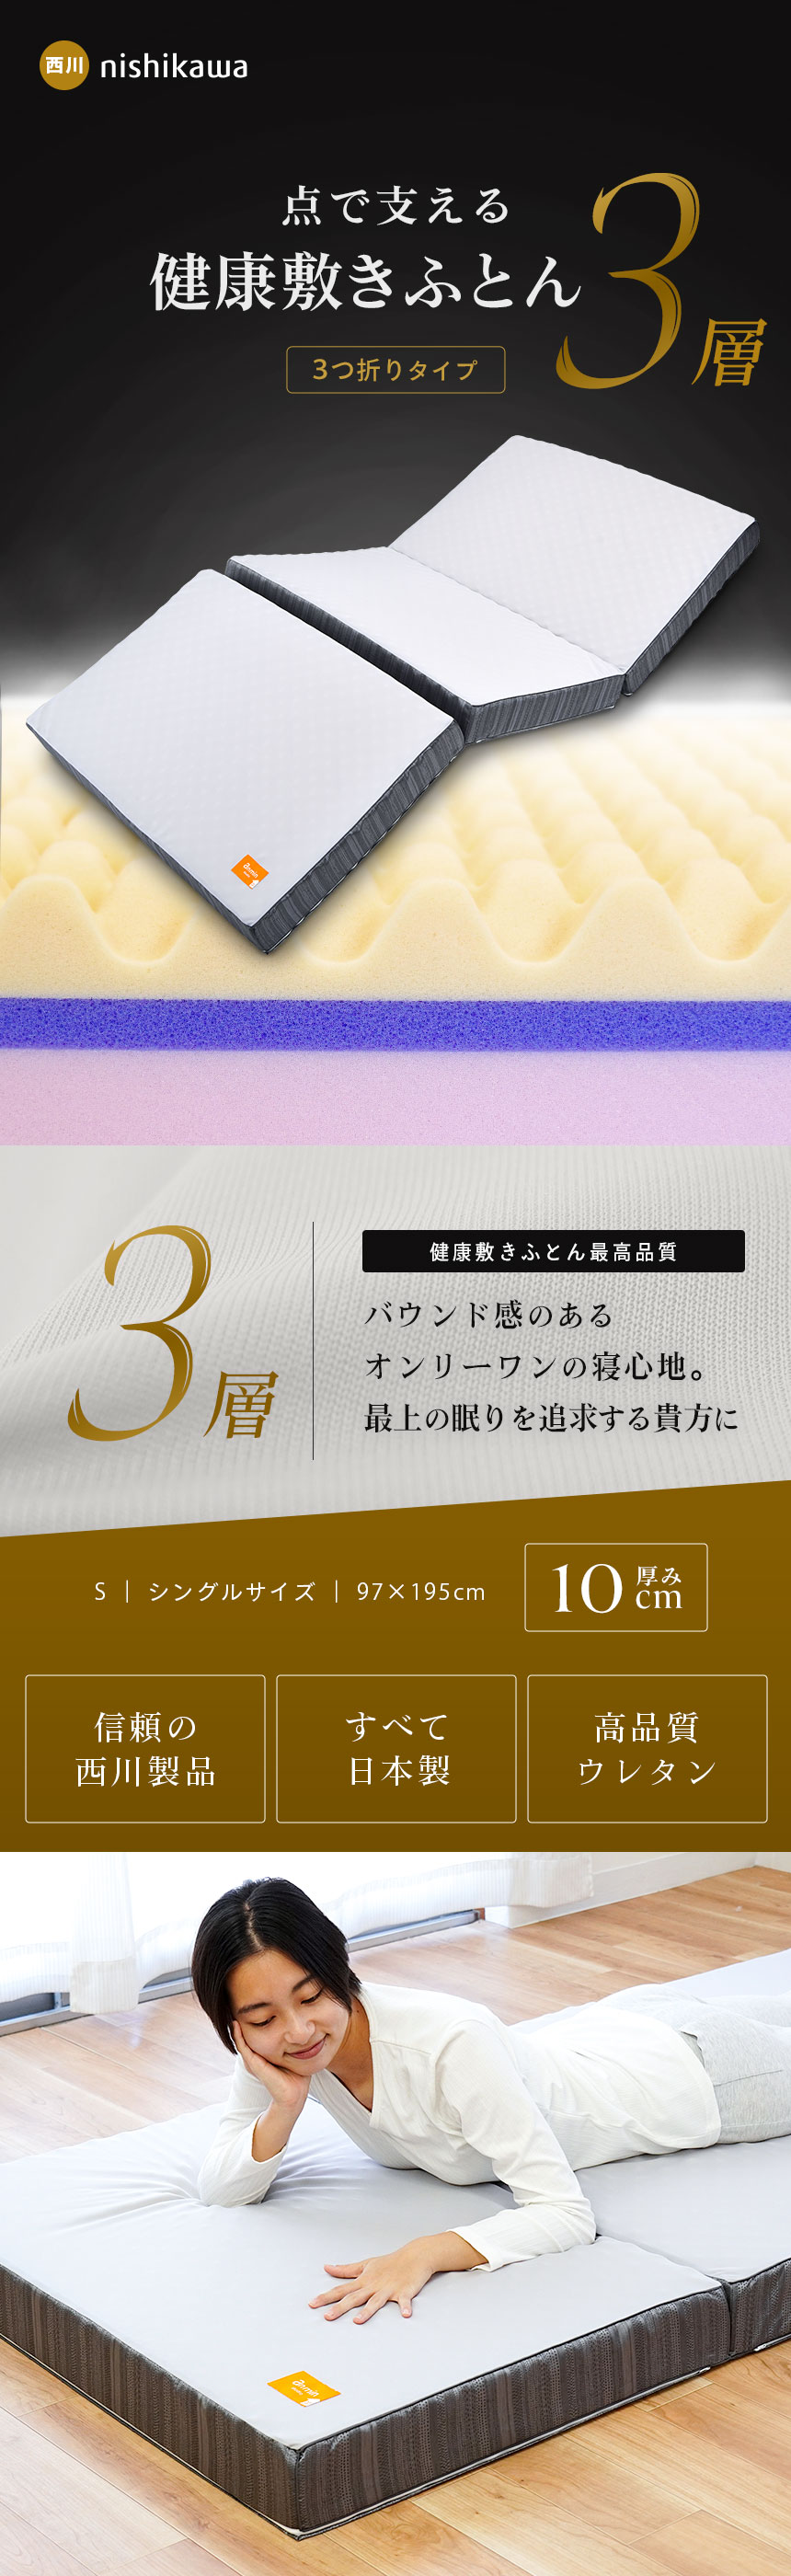 西川の健康敷きふとん 日本製三つ折りマットレス 税込み77000円ベッド